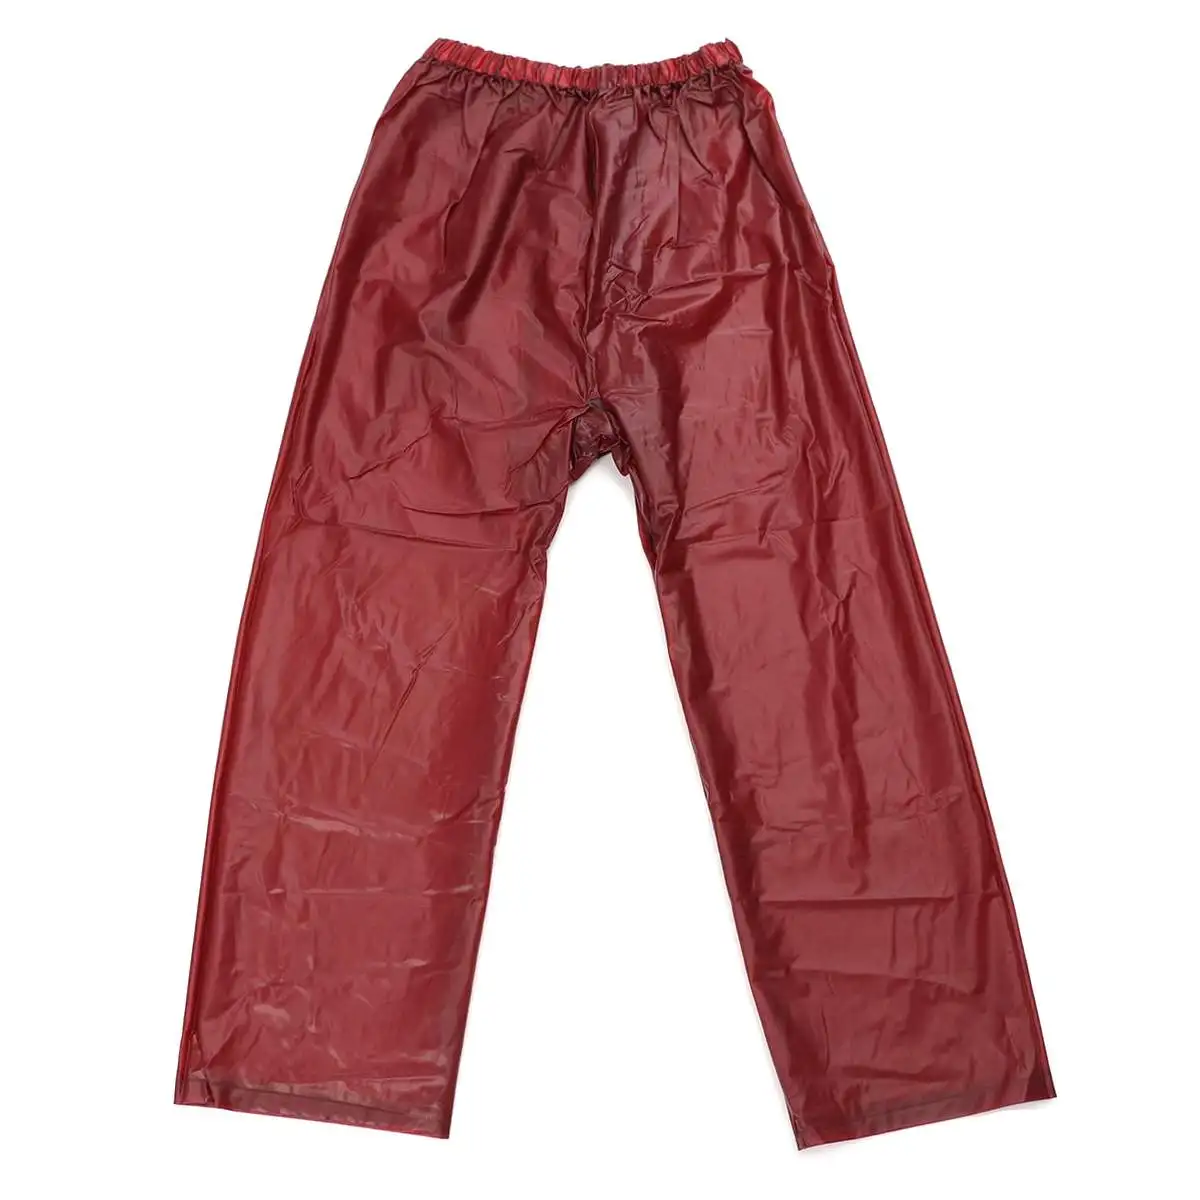 Складные непромокаемые штаны, женские мужские водонепроницаемые ветрозащитные штаны с эластичной резинкой на талии для езды на велосипеде, кемпинга, пеших прогулок - Цвет: Красный